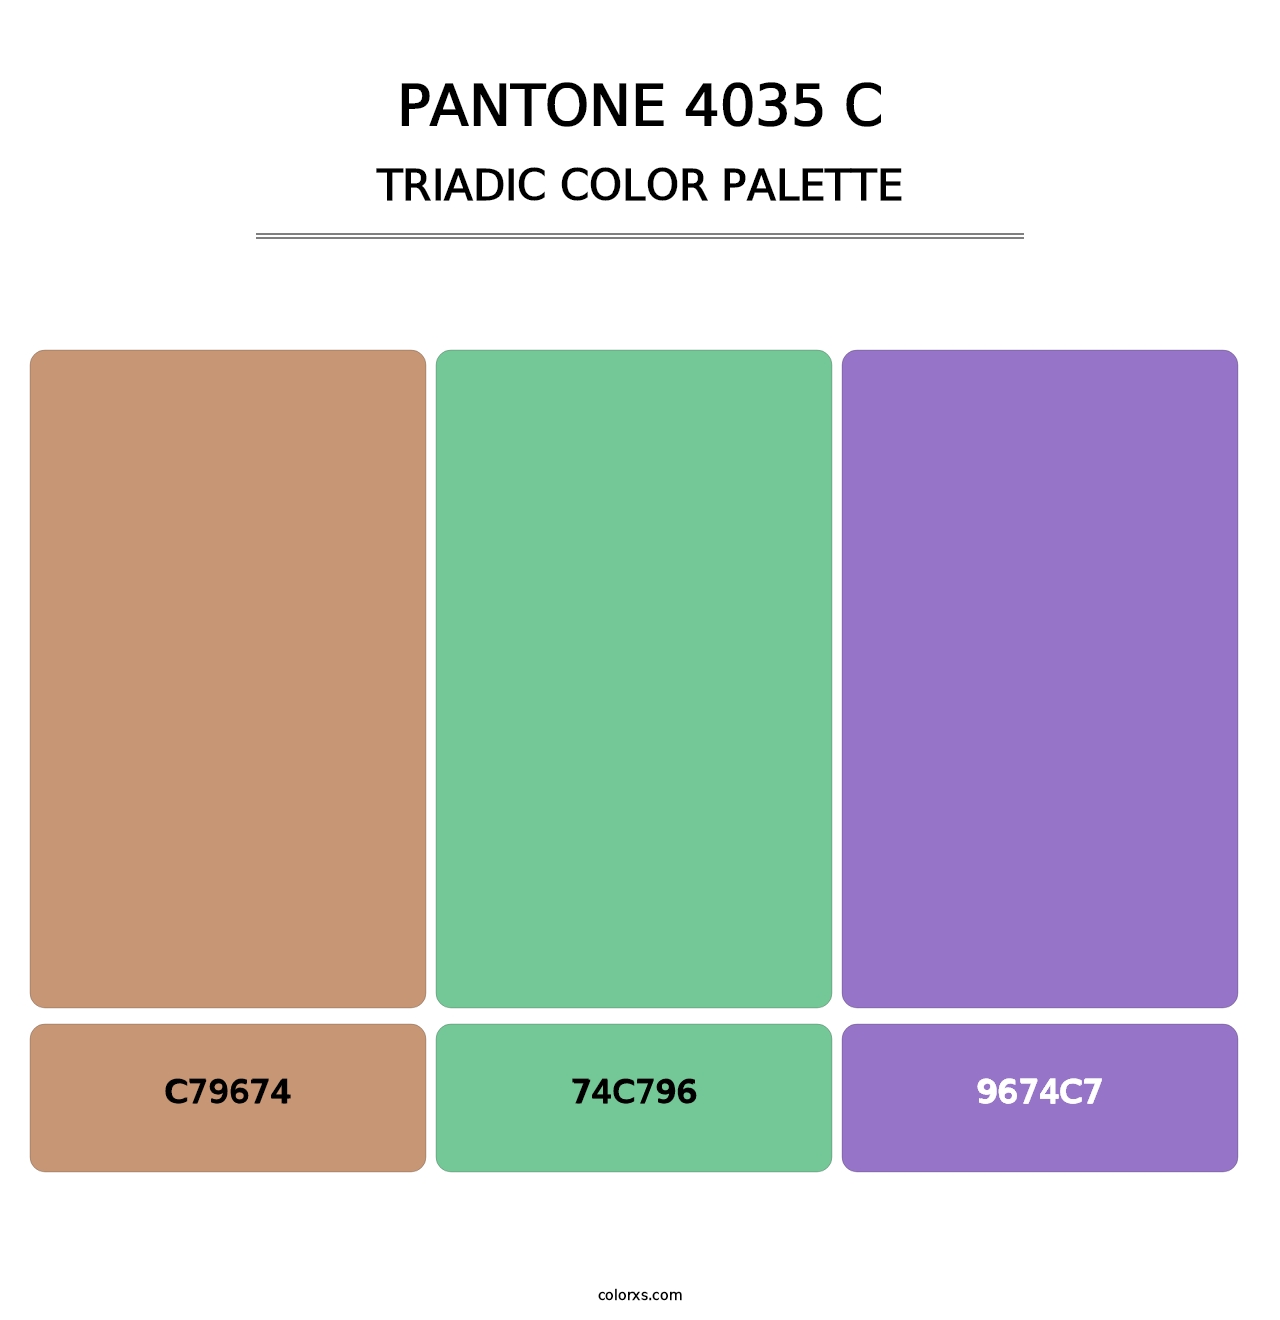 PANTONE 4035 C - Triadic Color Palette